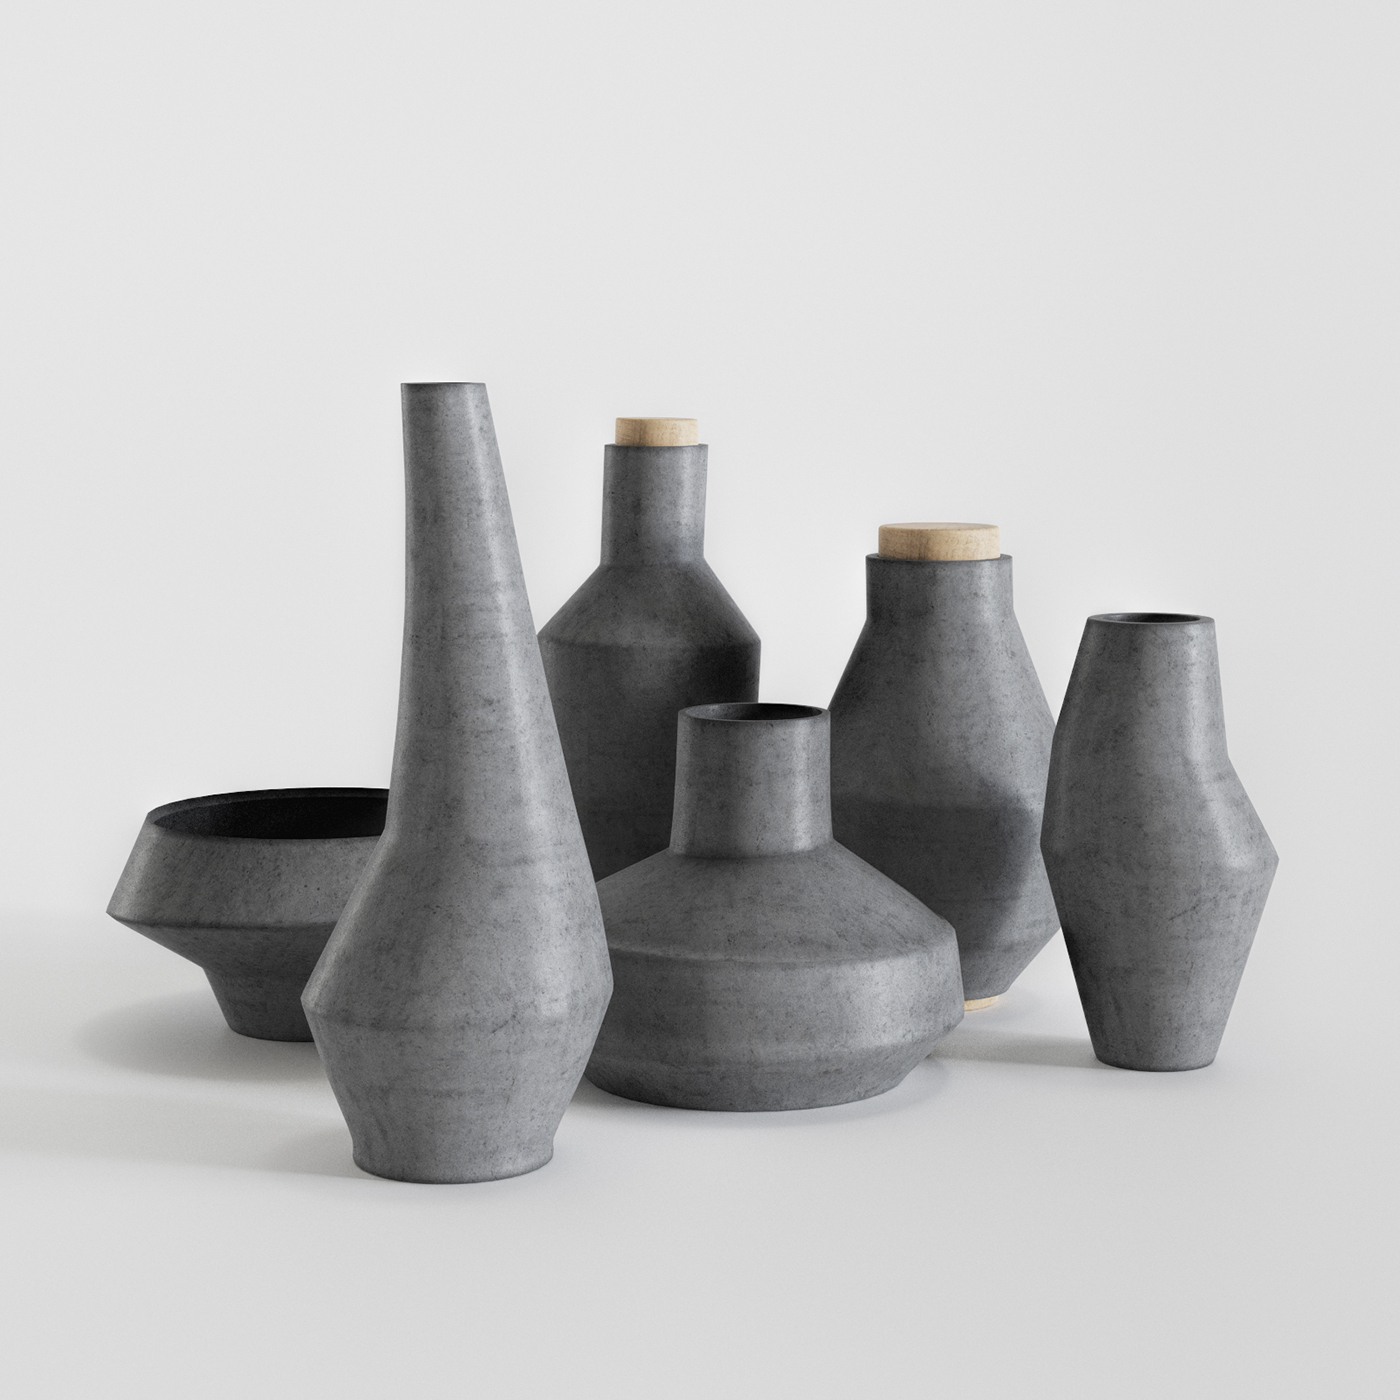 corona kolbasnikov vases 3D CG 3d Models models 3dmax